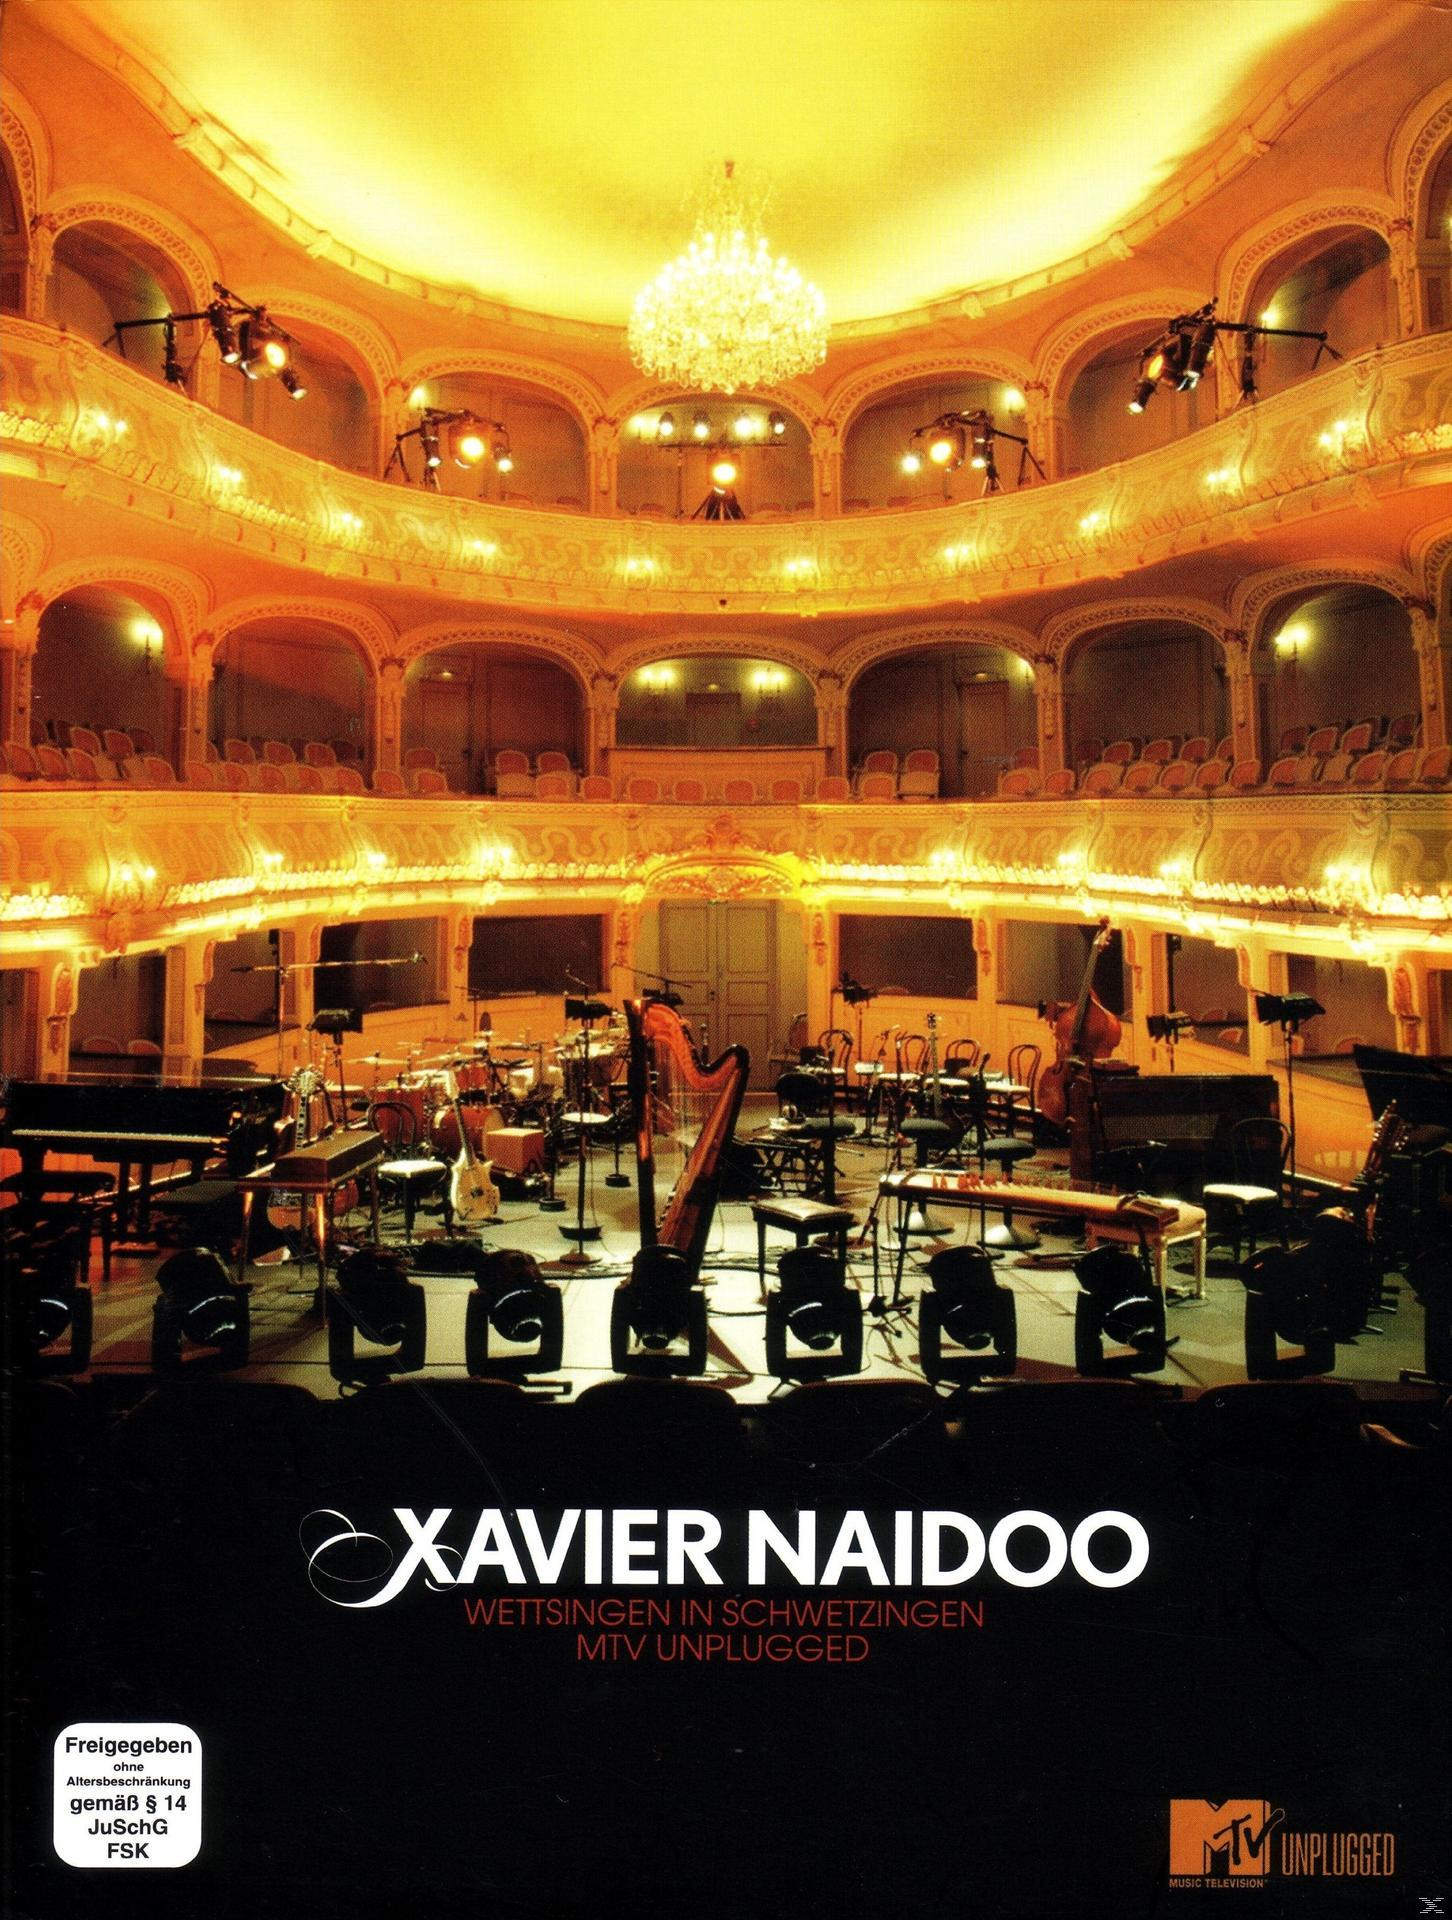 - Wettsingen - Naidoo Söhne Mannheims, Söhne Xavier MTV Xavier Mannheims Unplugged in (CD) Naidoo vs. Schwetzingen: -